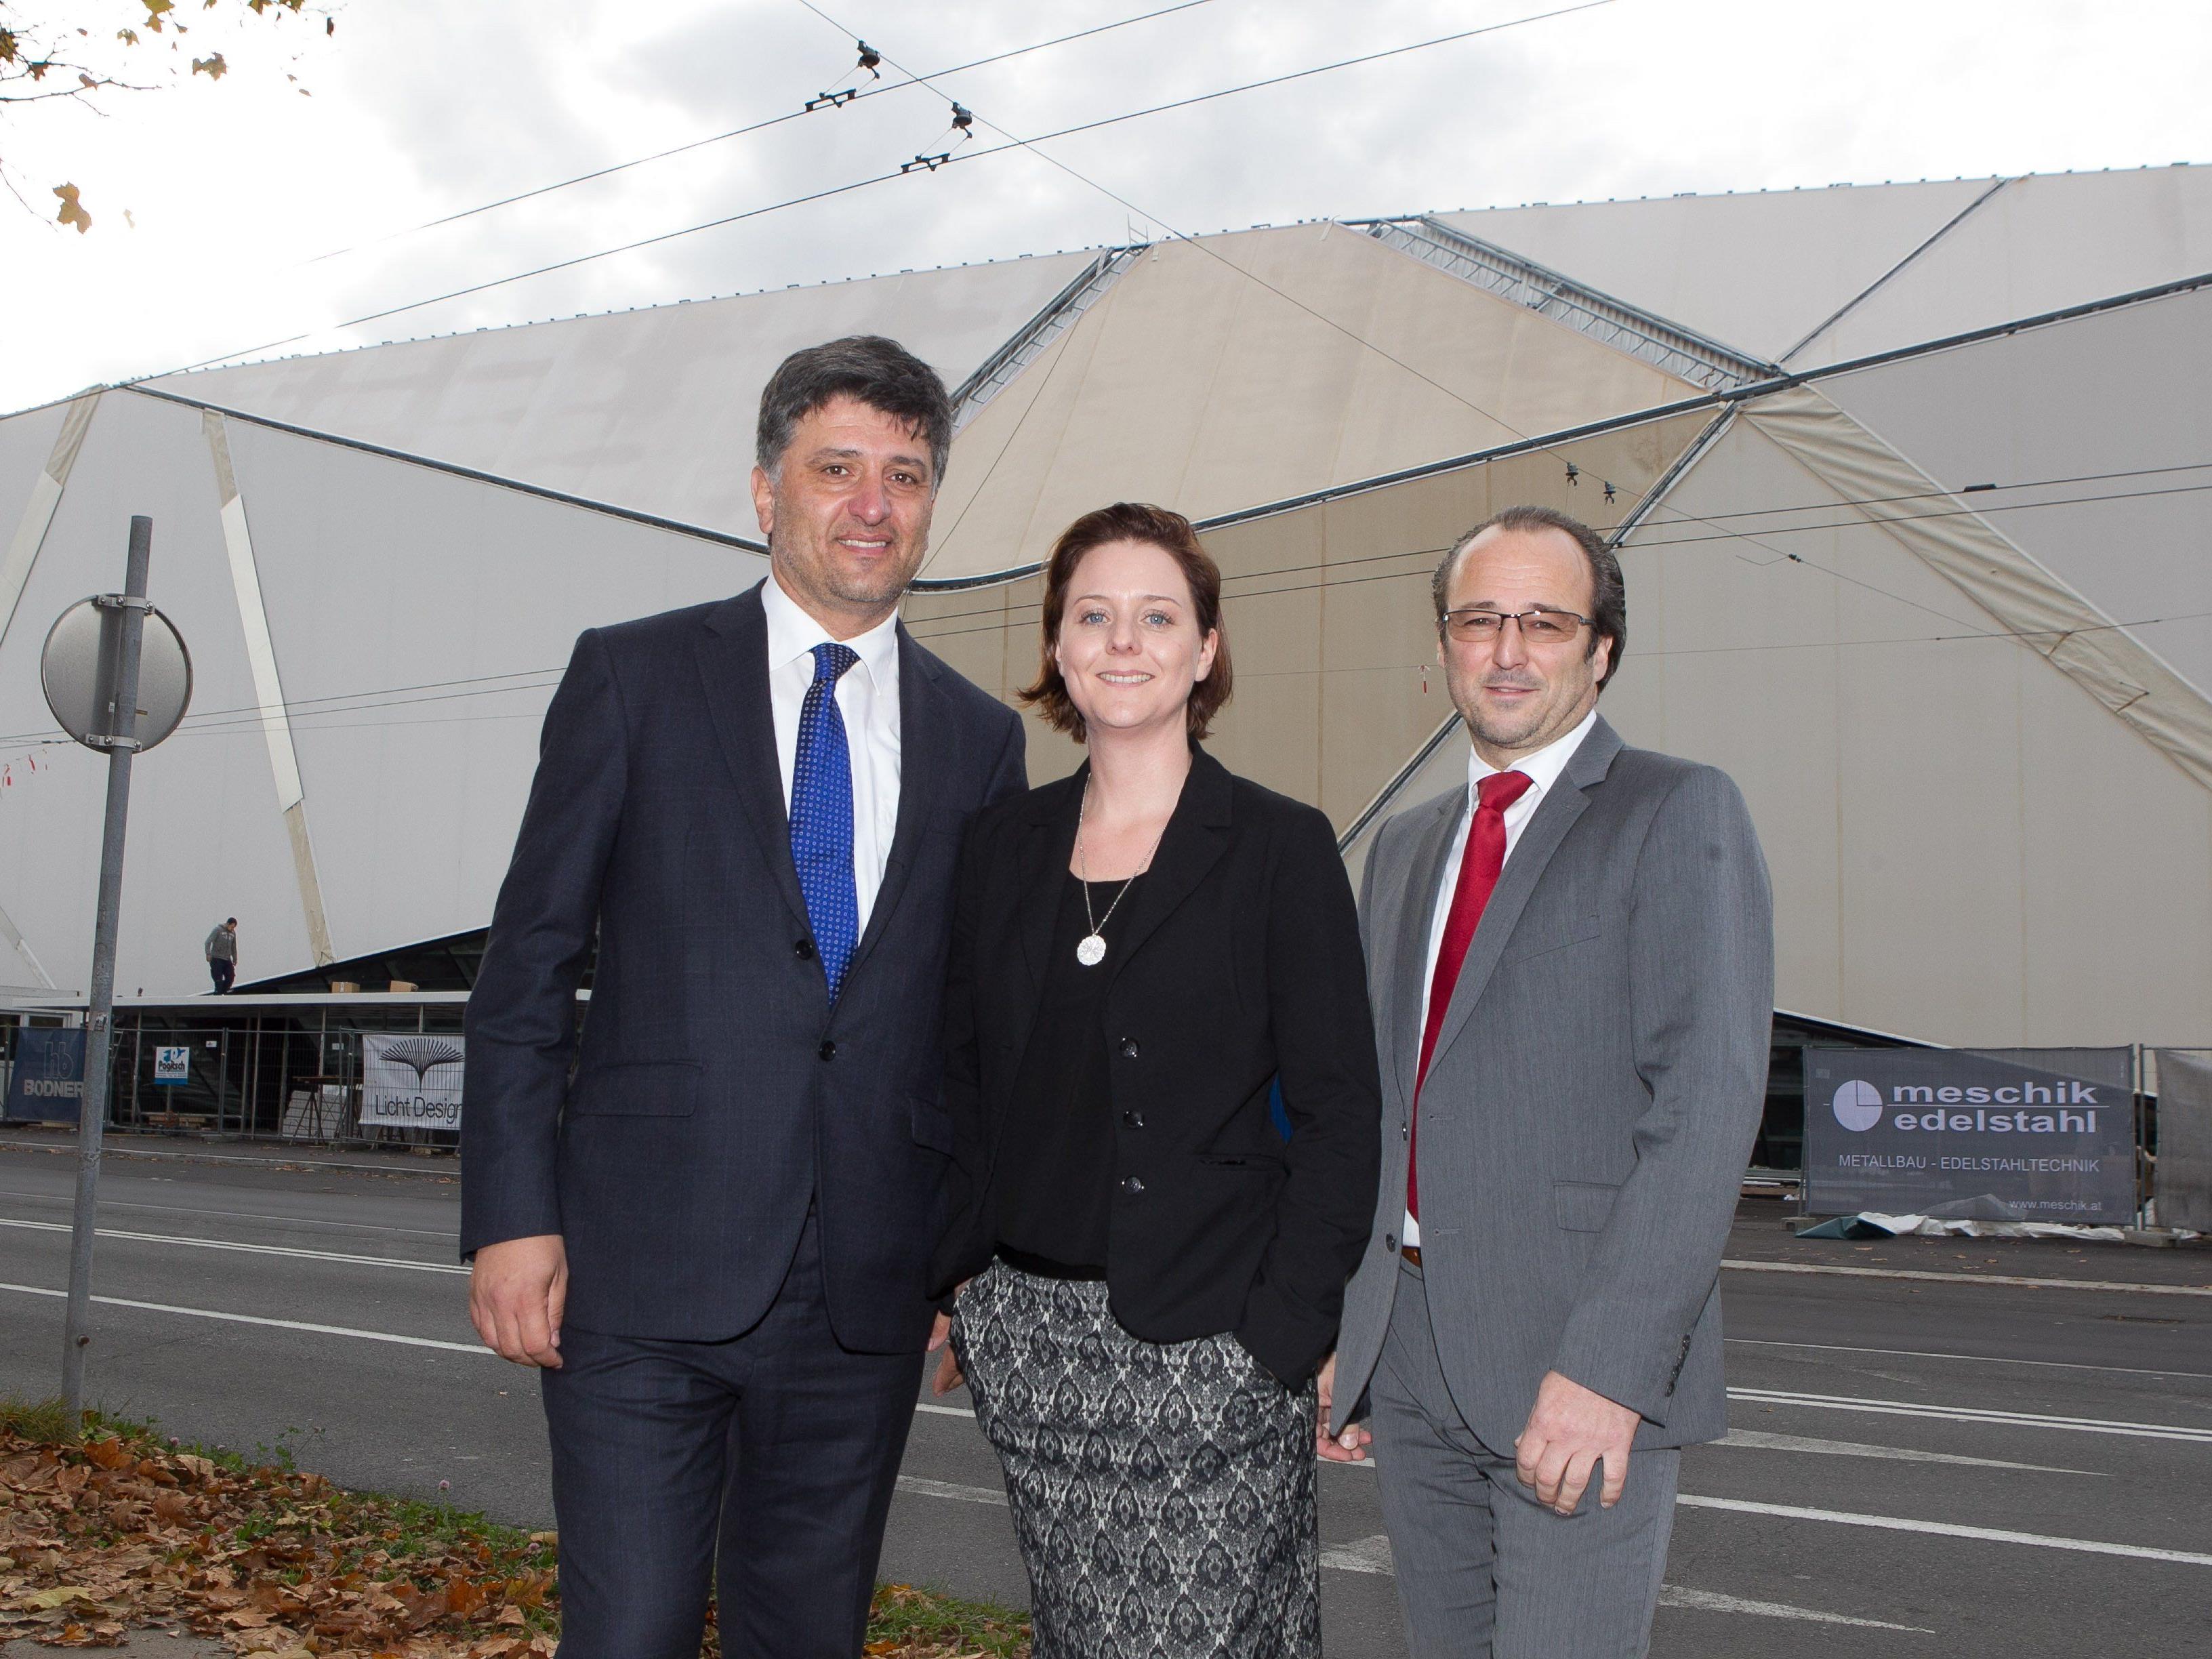 Endspurt im SCA. Im Bild von links: Erich Schuhmacher (GS), Sabine Gabl (Centermanagerin), Helmut Gappmayer (Eigentümervertreter).